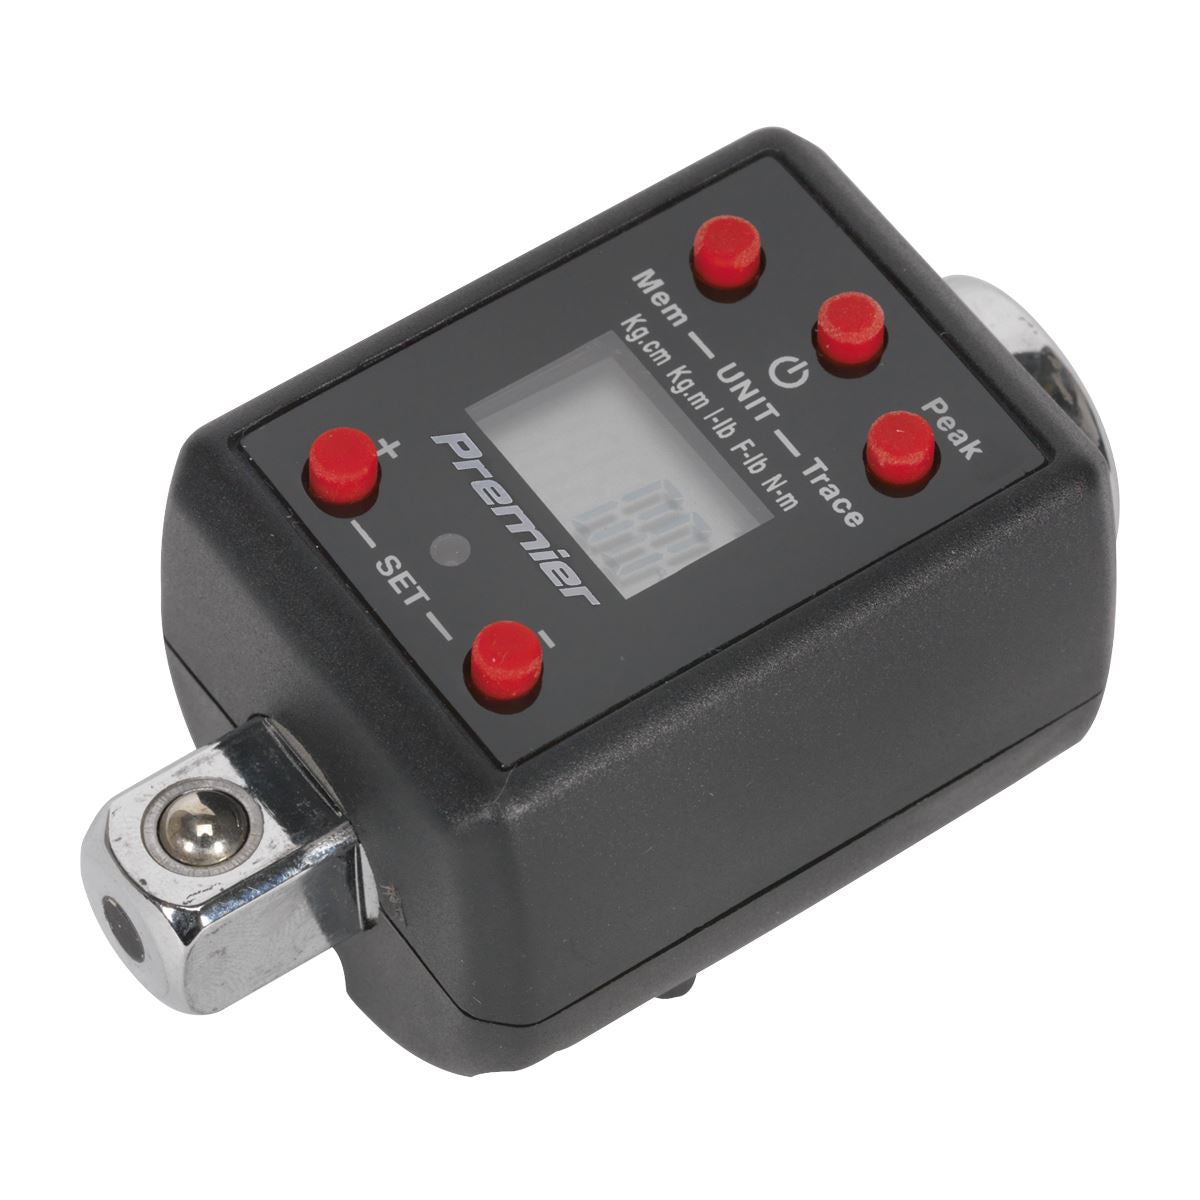 Sealey Premier Torque Adaptor Digital 1/2"Sq Drive 40-200Nm(29.5-147.5lb.ft)